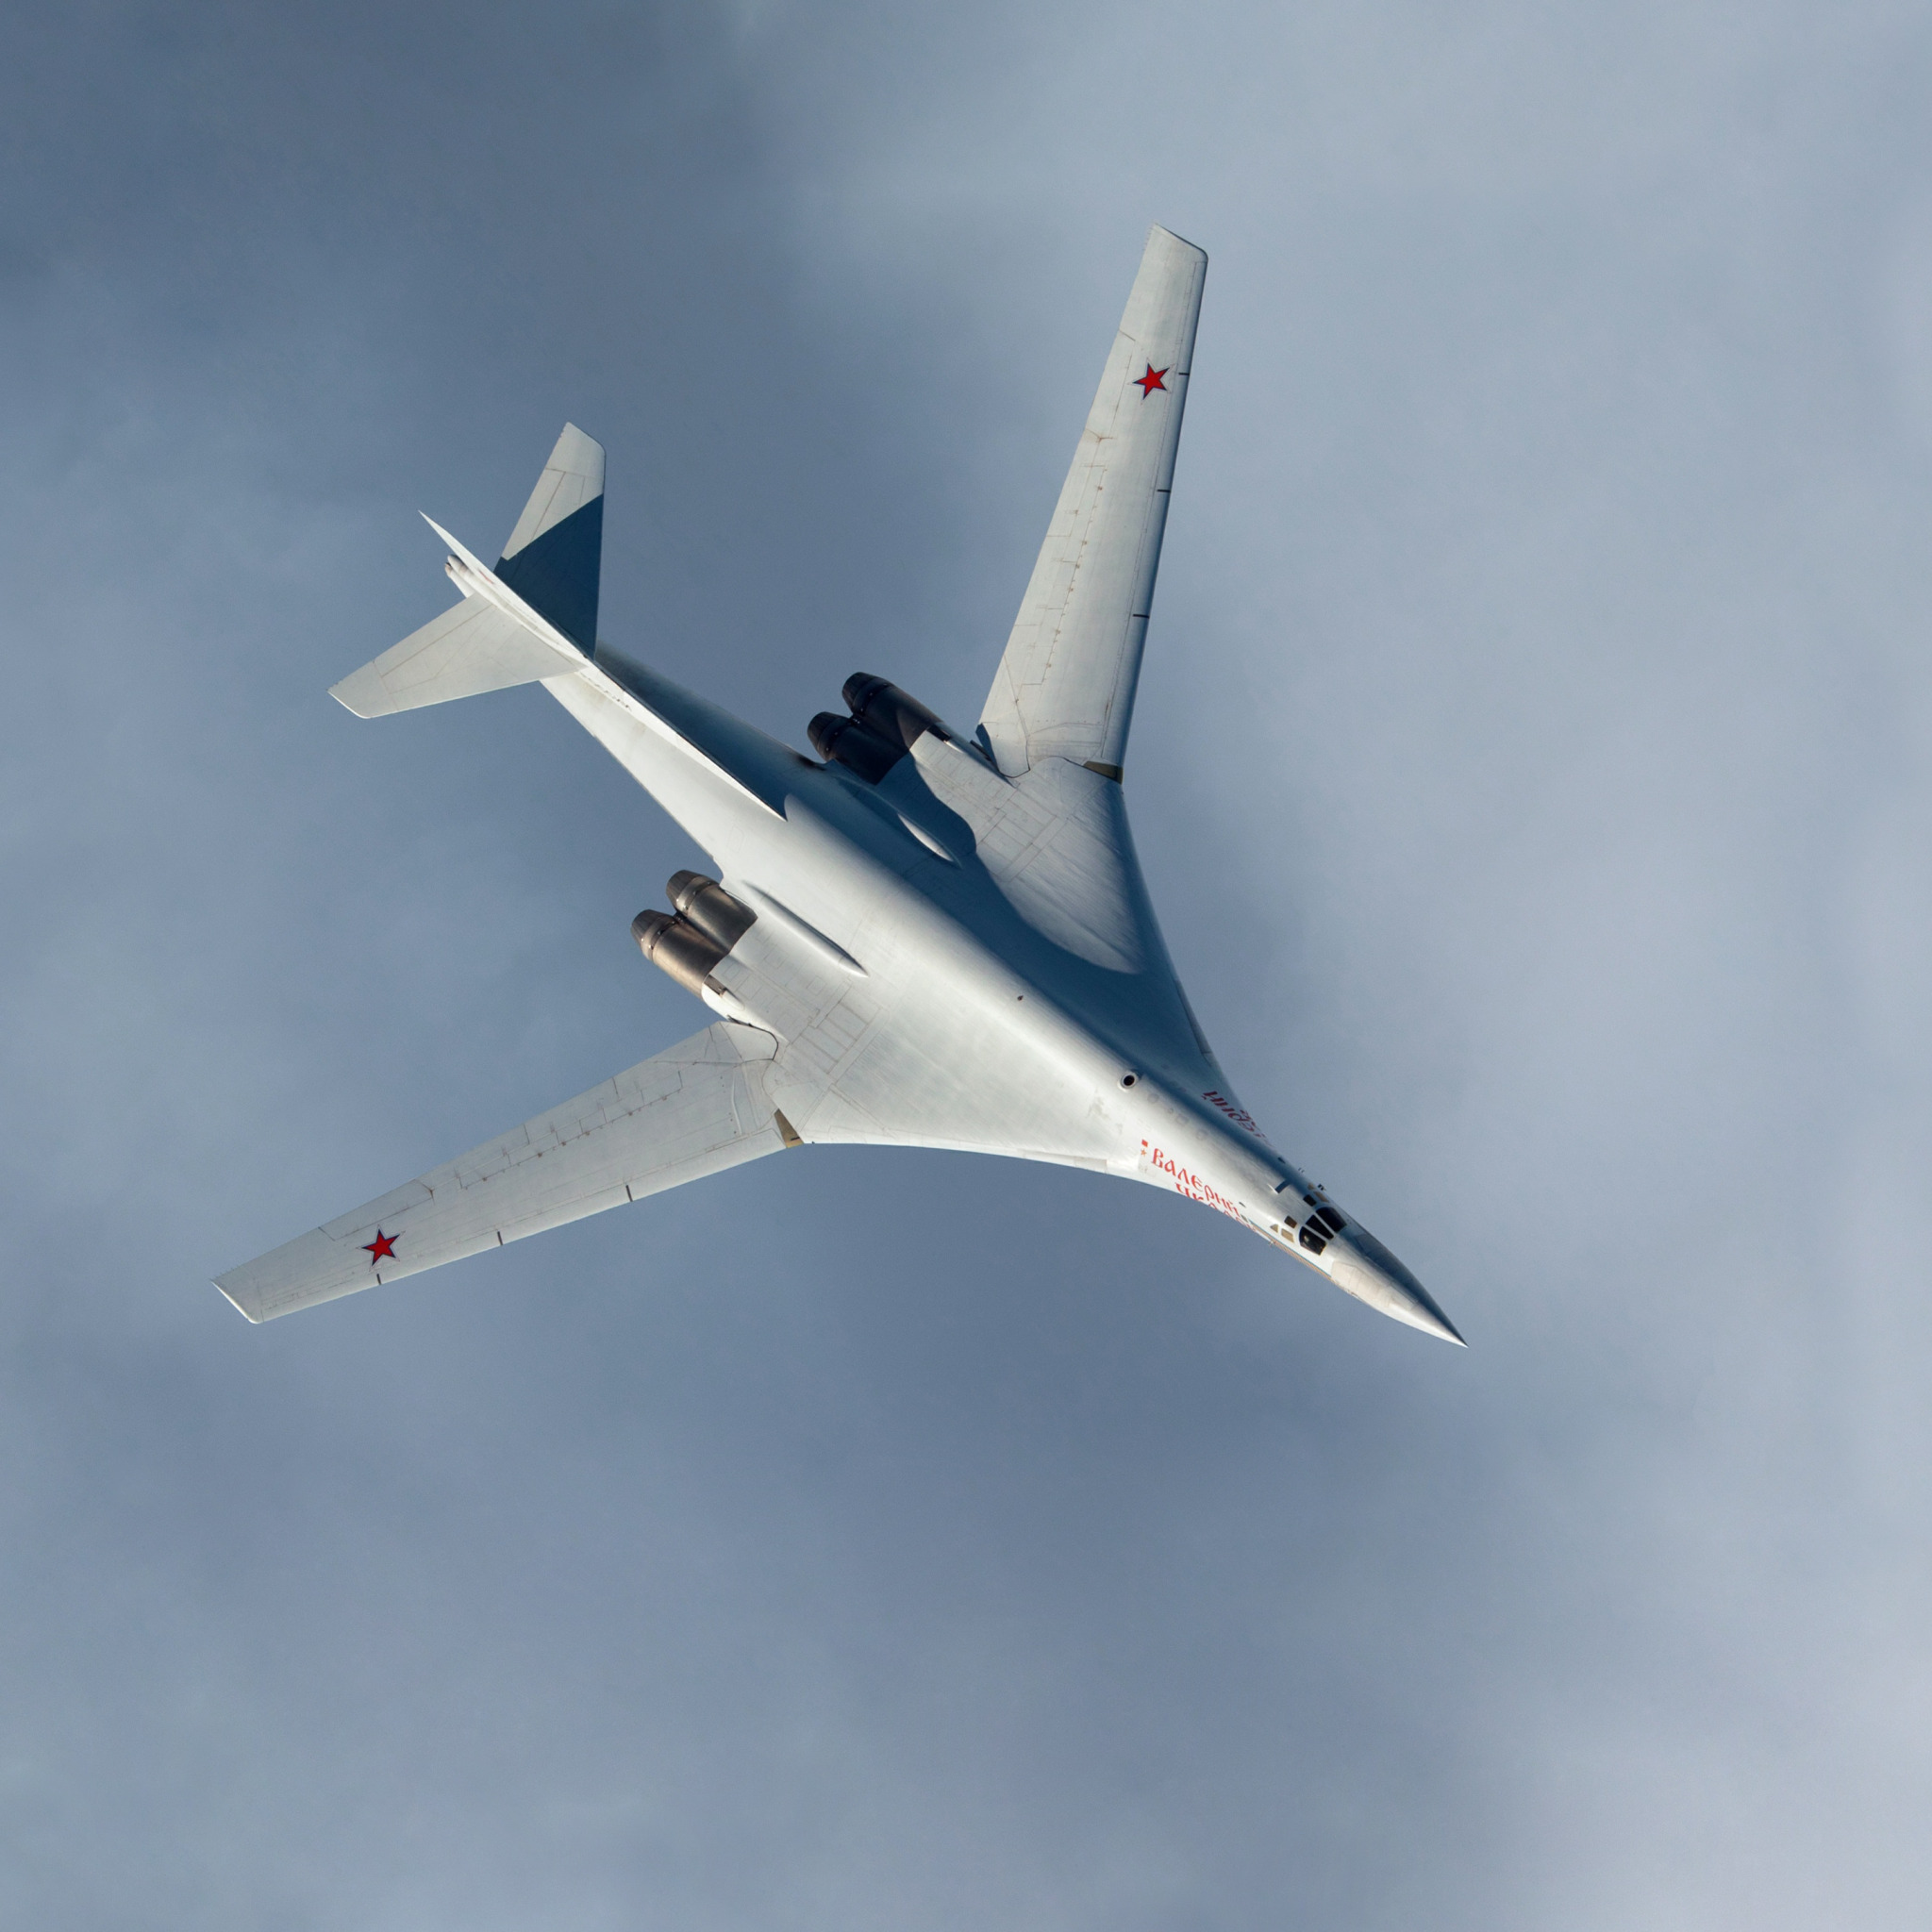 Захаров белый лебедь. Ту-160 белый лебедь. Лебедь самолет ту 160. Стратегический бомбардировщик белый лебедь. Истребитель ту 160 белый лебедь.